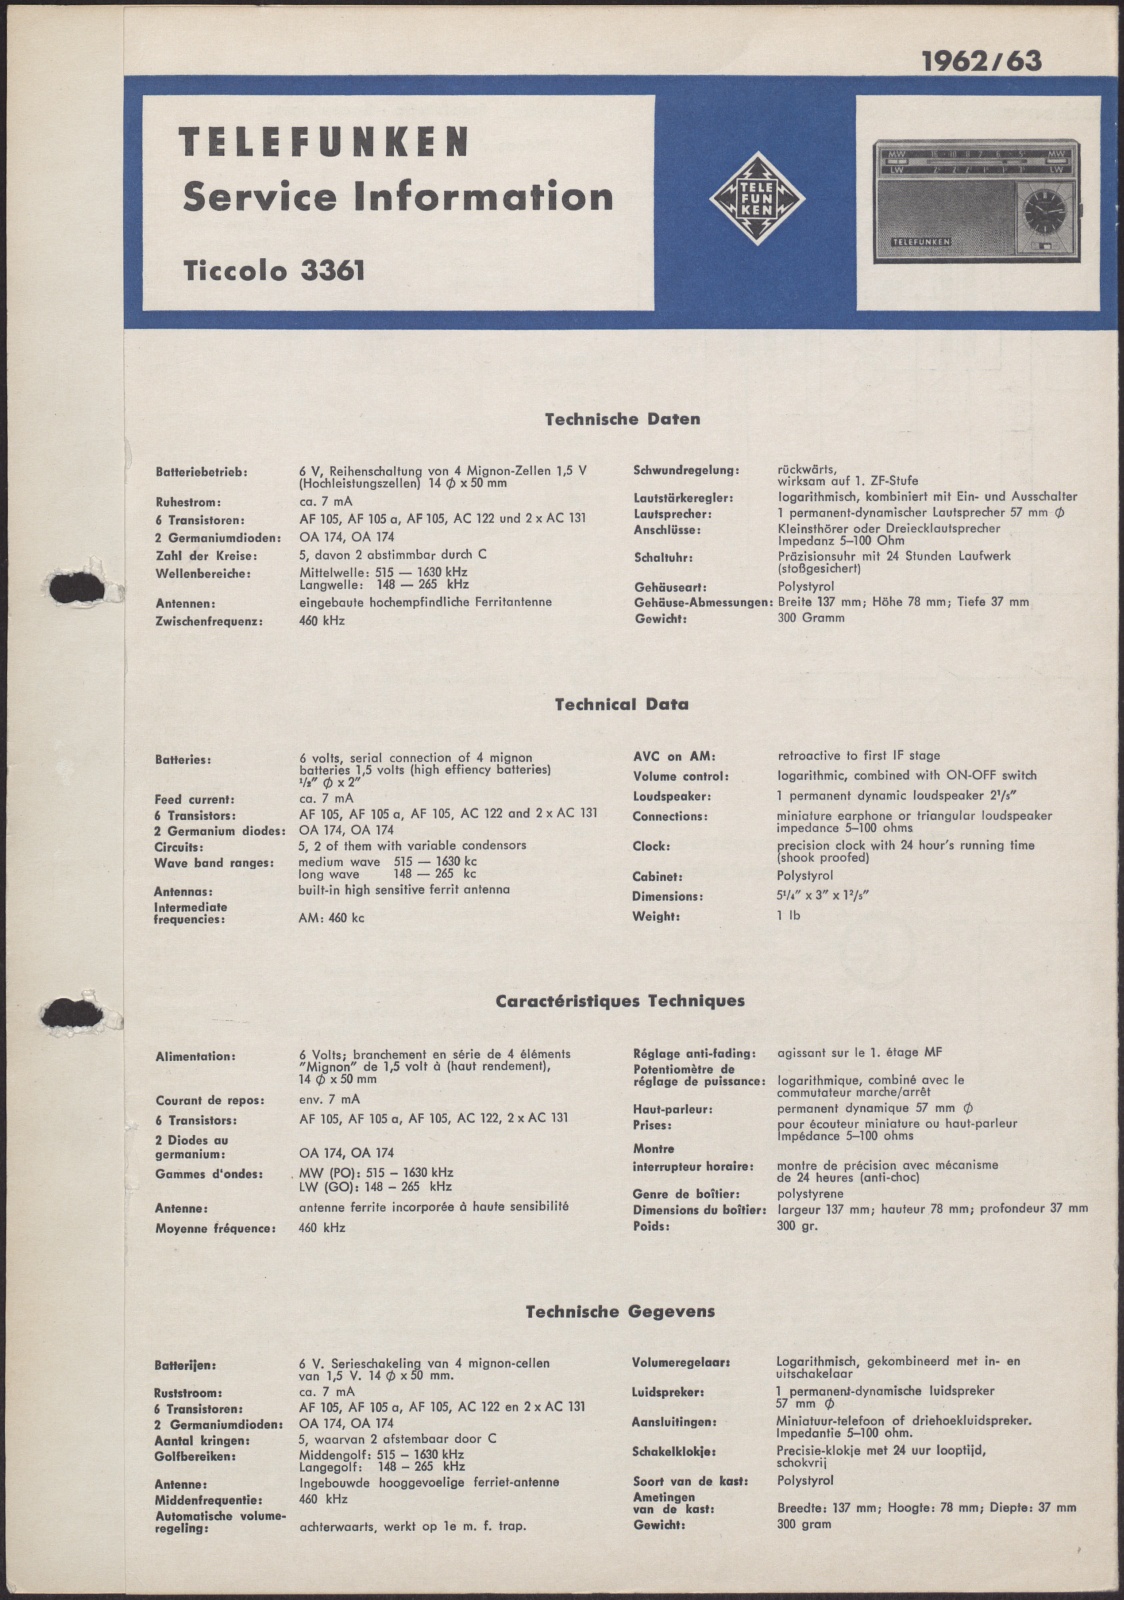 Bedienungsanleitung: Telefunken Service Information für Ticcolo 3361 (Stiftung Deutsches Technikmuseum Berlin CC0)